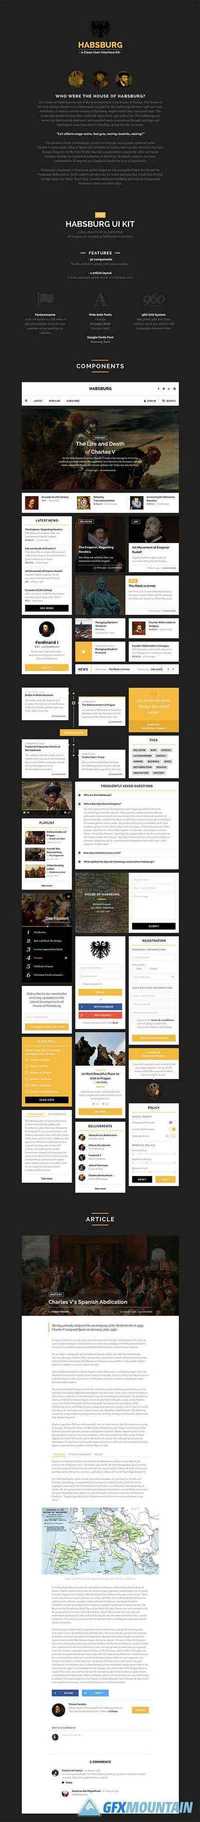 PSD Web Design - Habsburg UI Kit